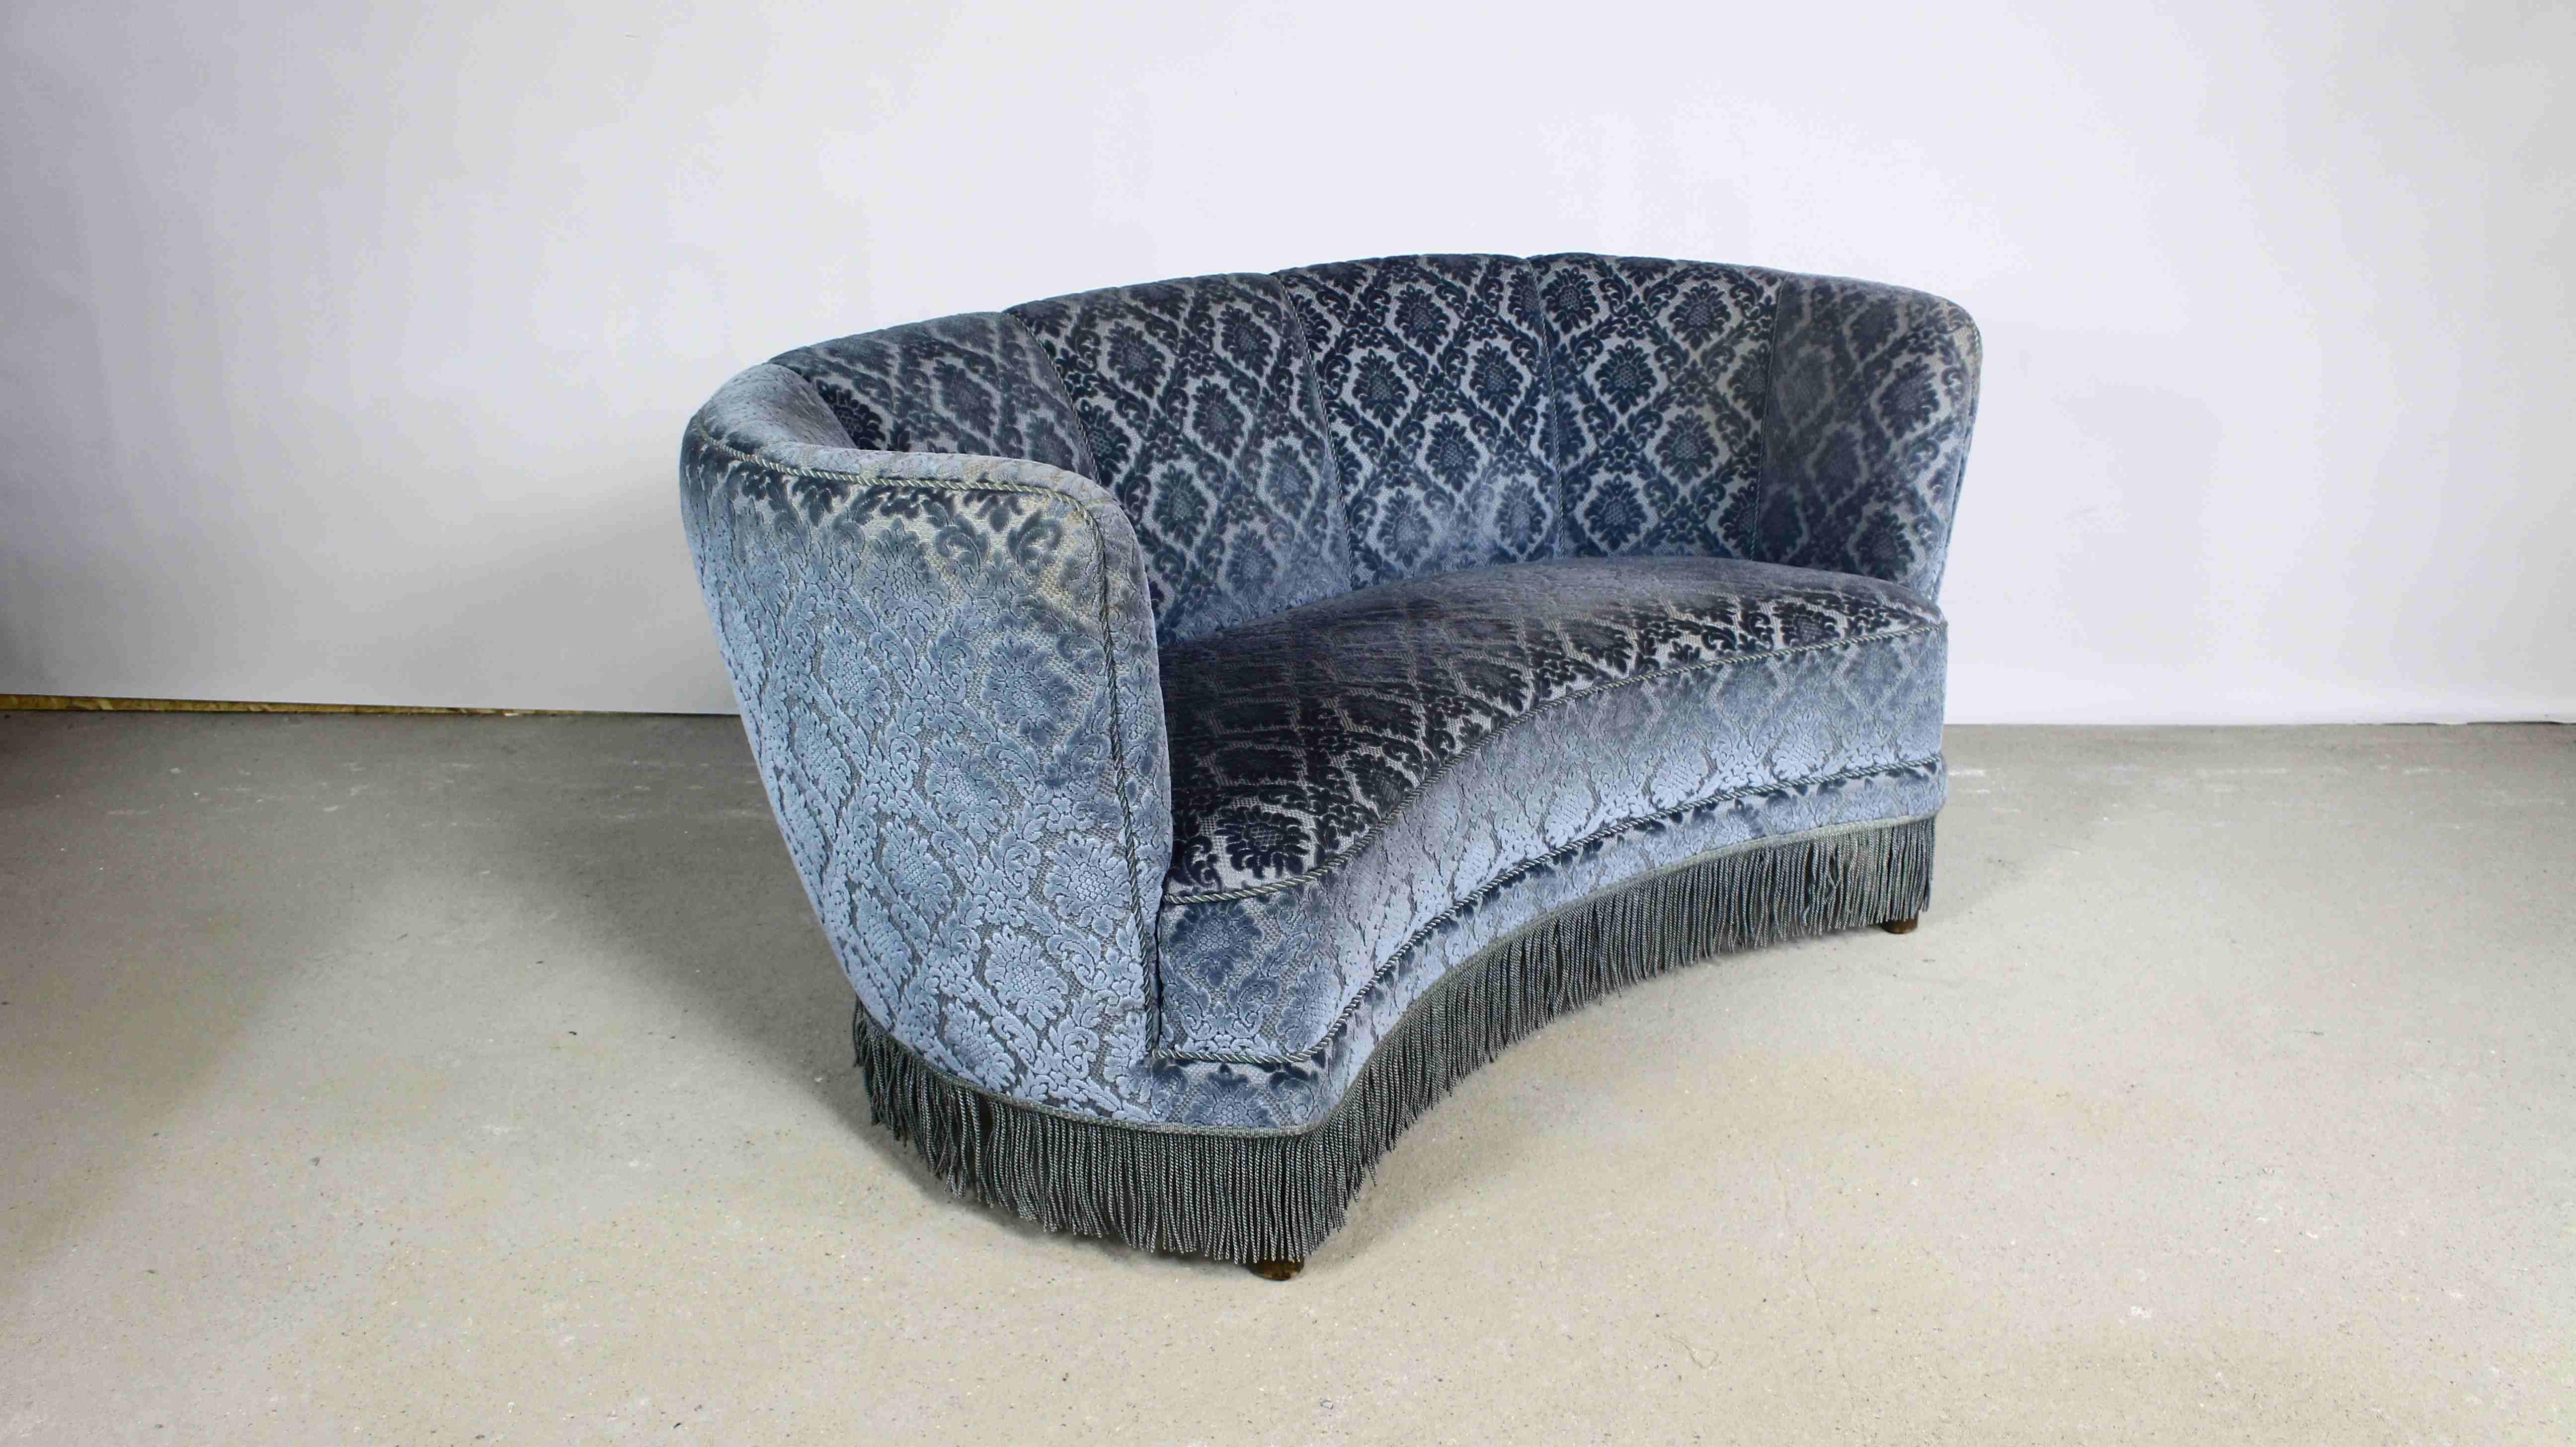 Un magnifique canapé rond de style art déco.
Tapissé de velours bleu avec un motif floral en relief.
Fabriqué au Danemark dans les années 1950.
Siège avec sangles et ressorts.
Les endroits éclaircis sur les tissus d'ameublement sont l'effet de la